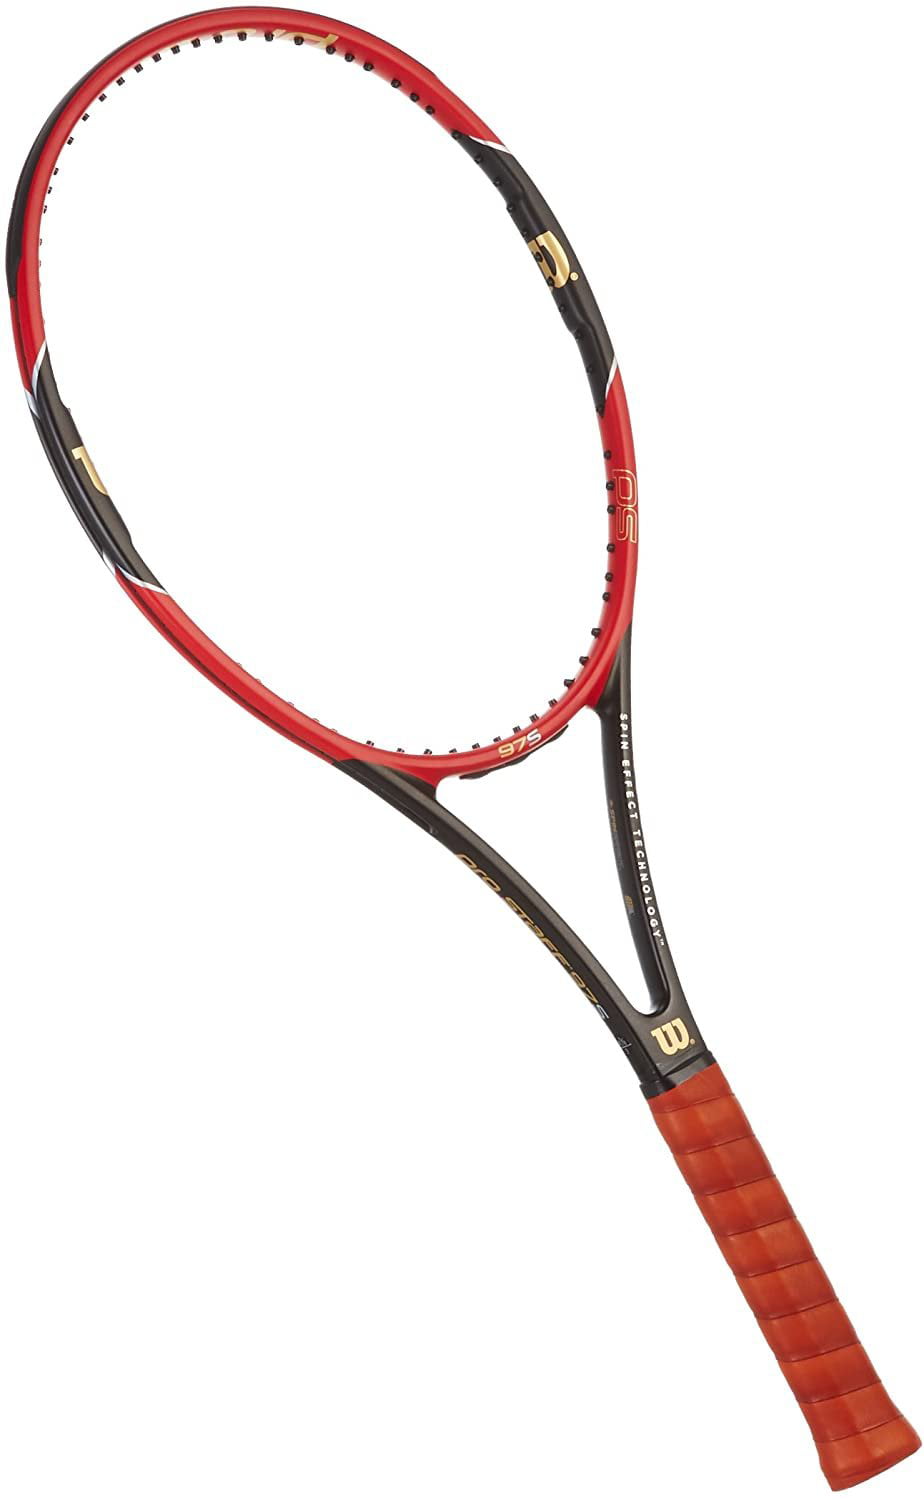 GRIP 4 1/4 STRUNG NEW Wilson Pro Staff 97S Tennis Racquet racket 